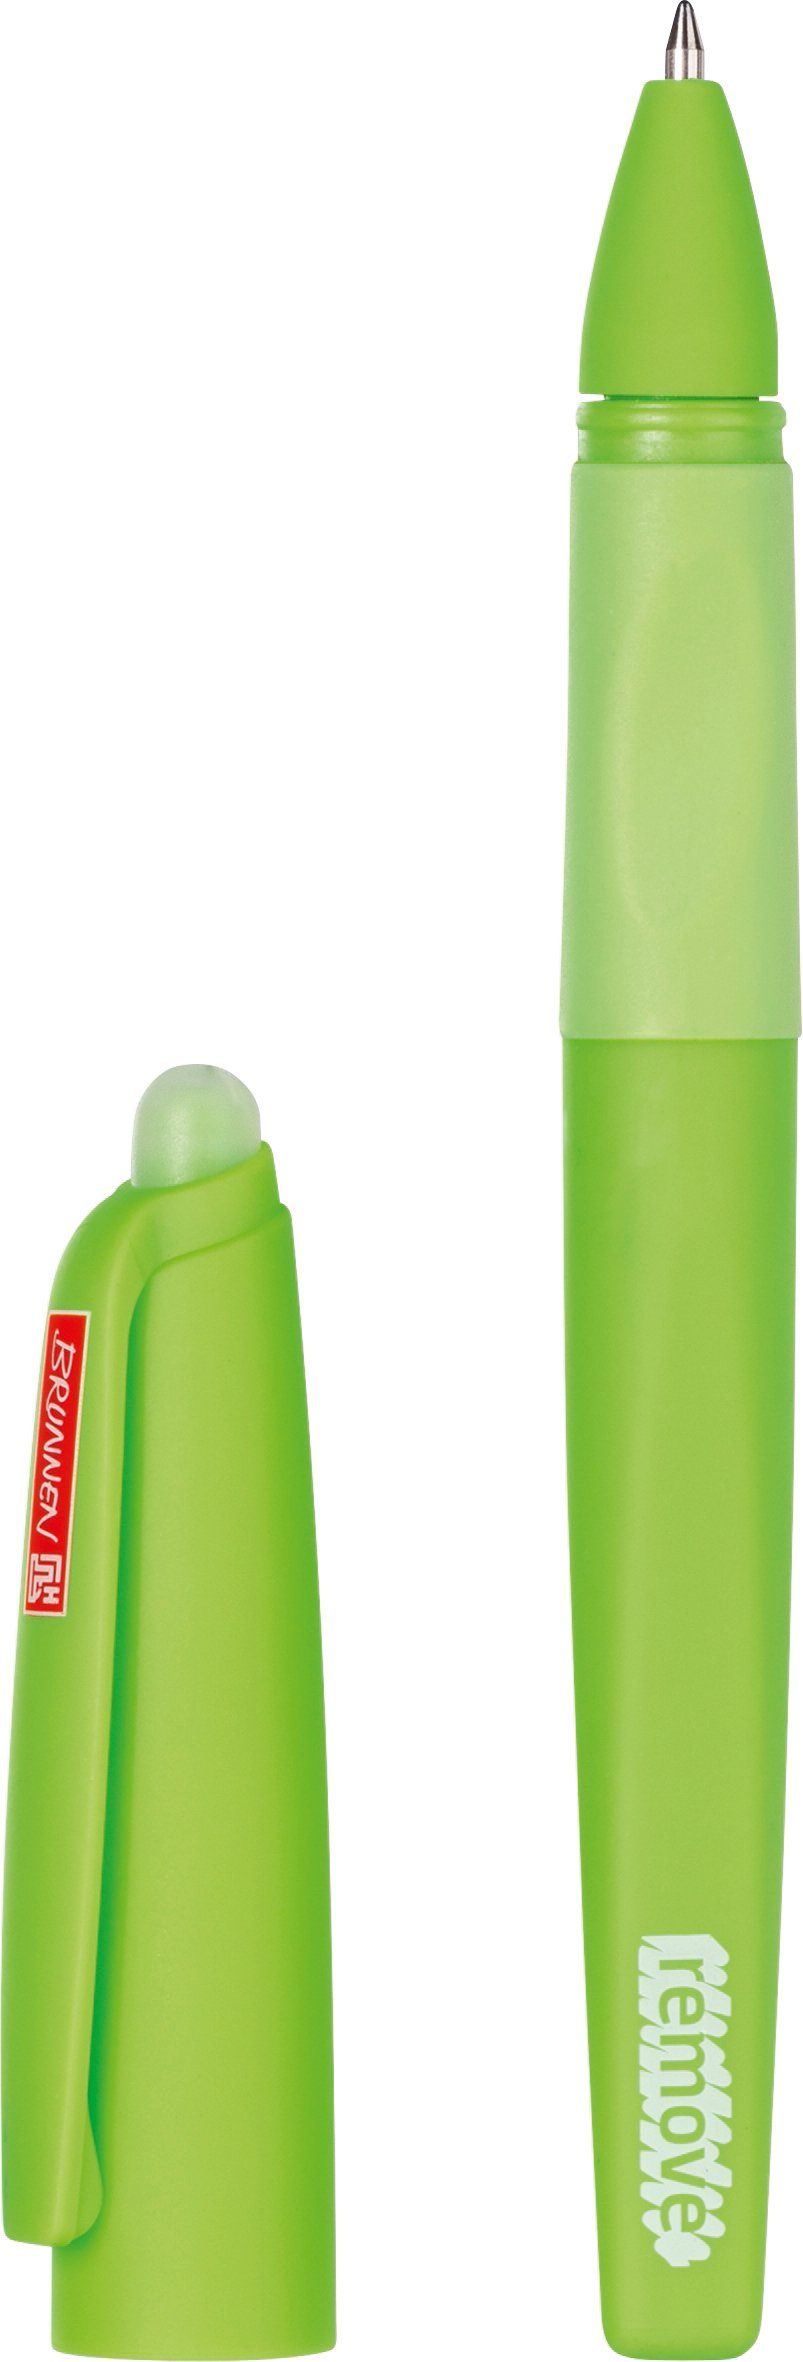 blau Schreibfarbe: BRUNNEN Remove Gelschreiber grün, Tintenpatrone BRUNNEN